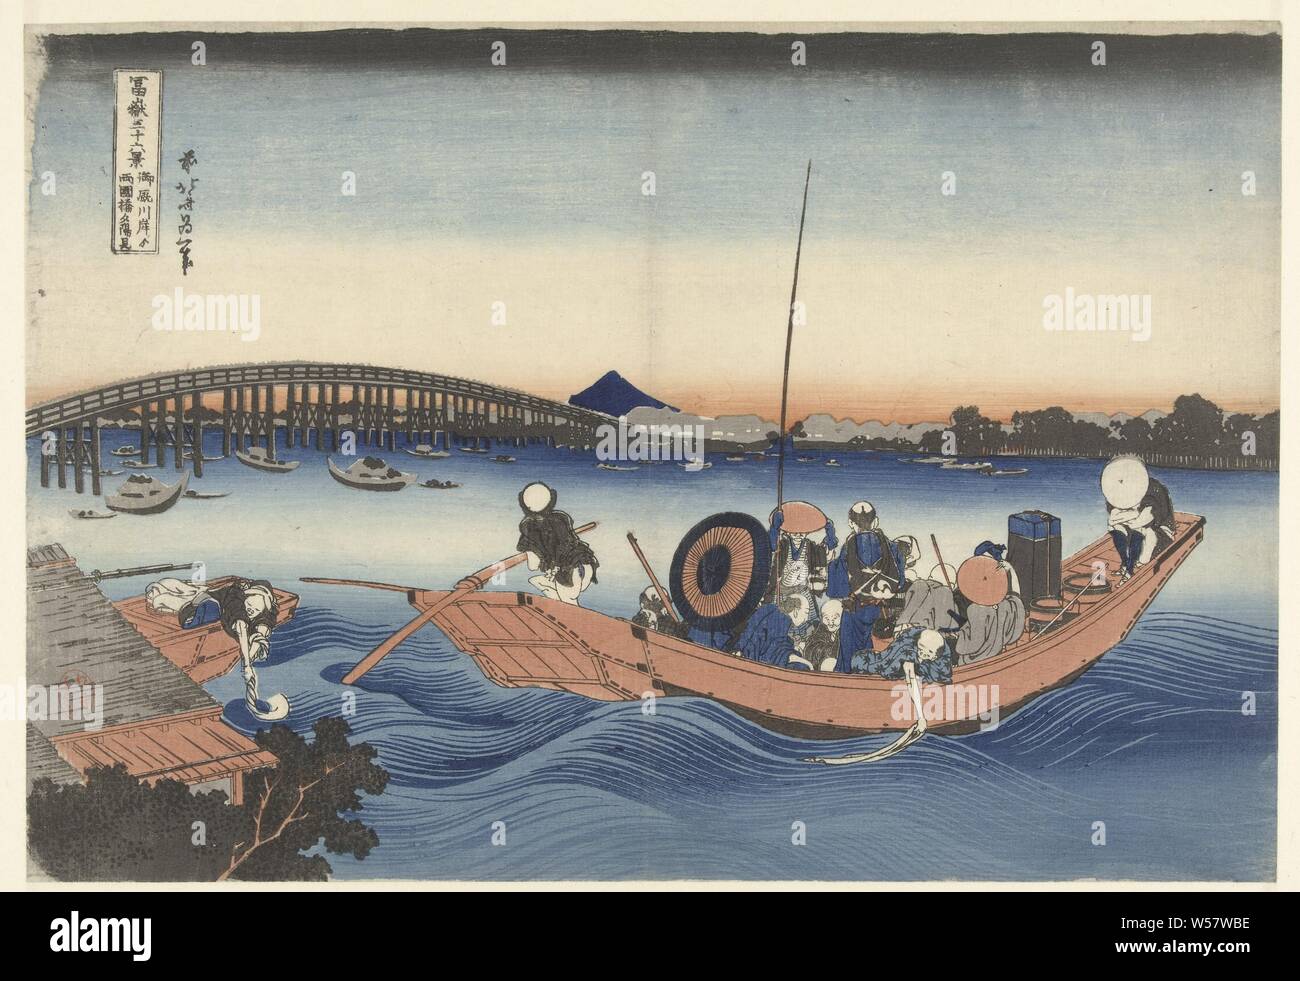 Sonnenuntergang an der Ryogoku Brücke vom Ufer Onmaya Onmayagashi yori Ryogokubashi keine sekiyo o Miru (Titel auf Objekt) 36 Blick auf Mount Fuji (Titel der Serie) Fuji sanjurokkei (Titel der Serie auf Objekt), eine Überfahrt mit der Fähre der Sumida River, im Hintergrund der Ryogoku Brücke und Mount Fuji gegen einen roten Abendhimmel, Fuji, der Berg, Katsushika Hokusai (auf Objekt erwähnt), 1831-1835, Papier, Farbholzschnitt, H 258 mm x B 376 mm Stockfoto